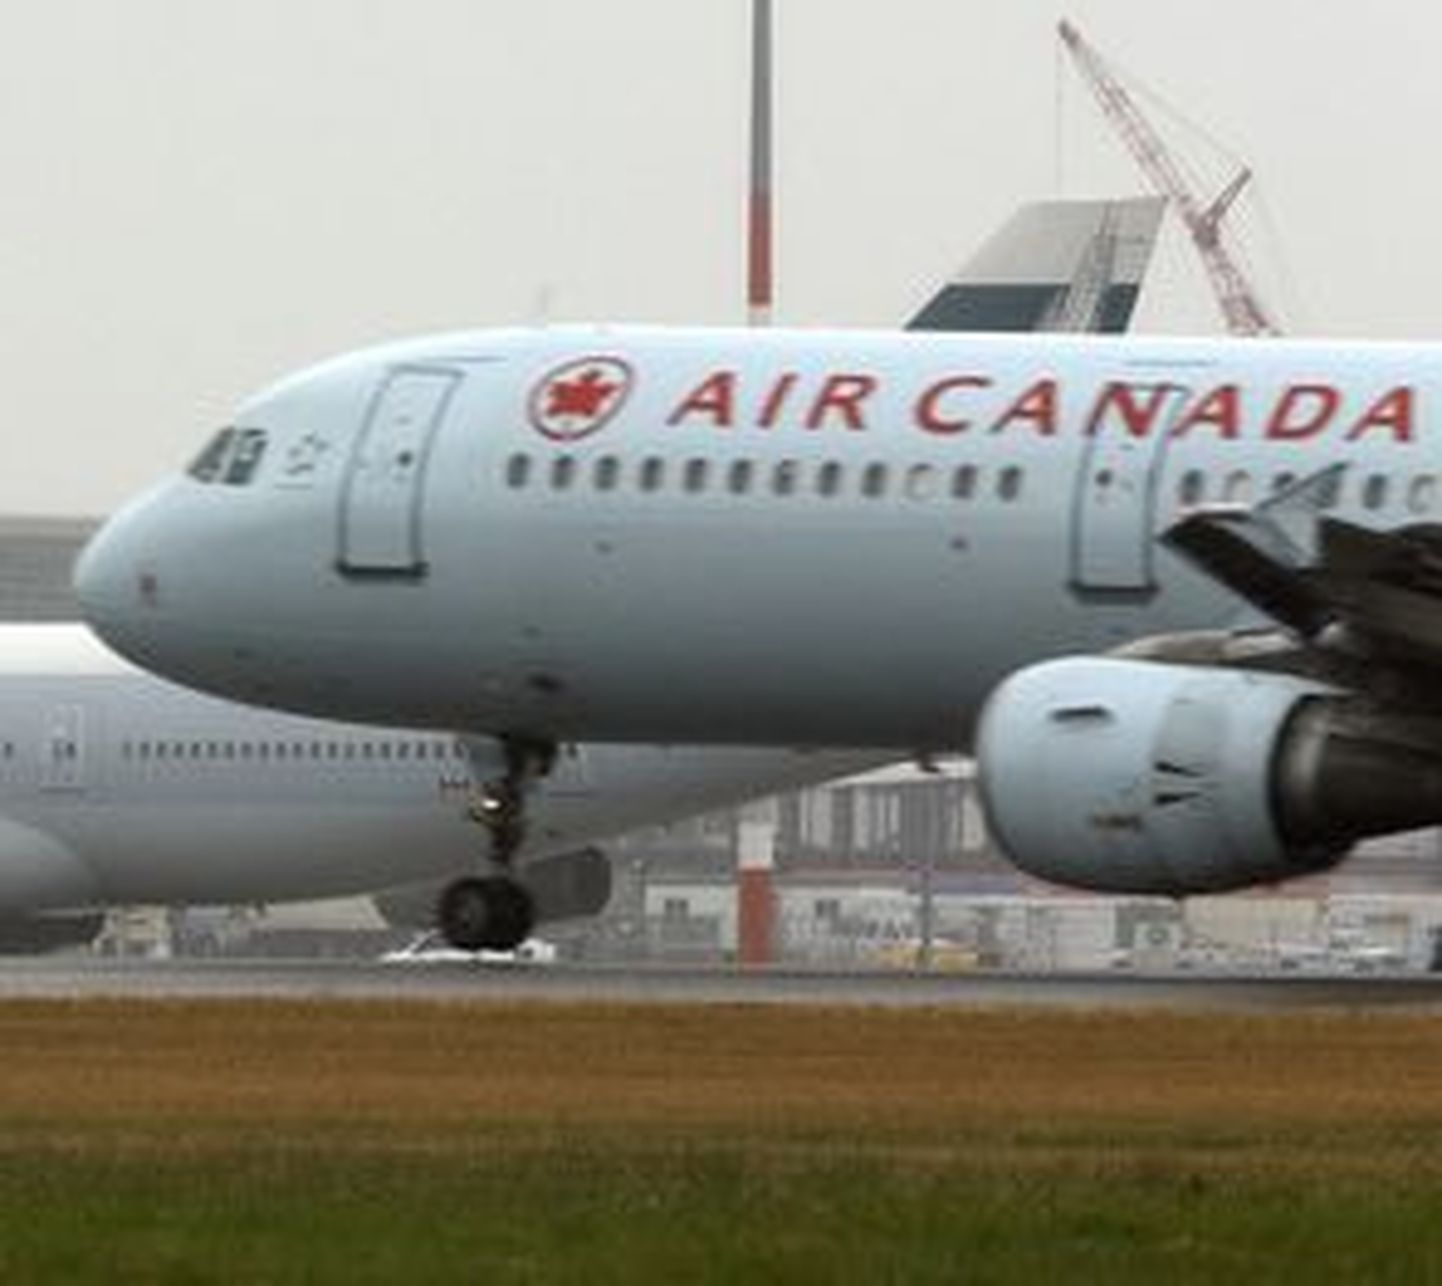 Air Canada.